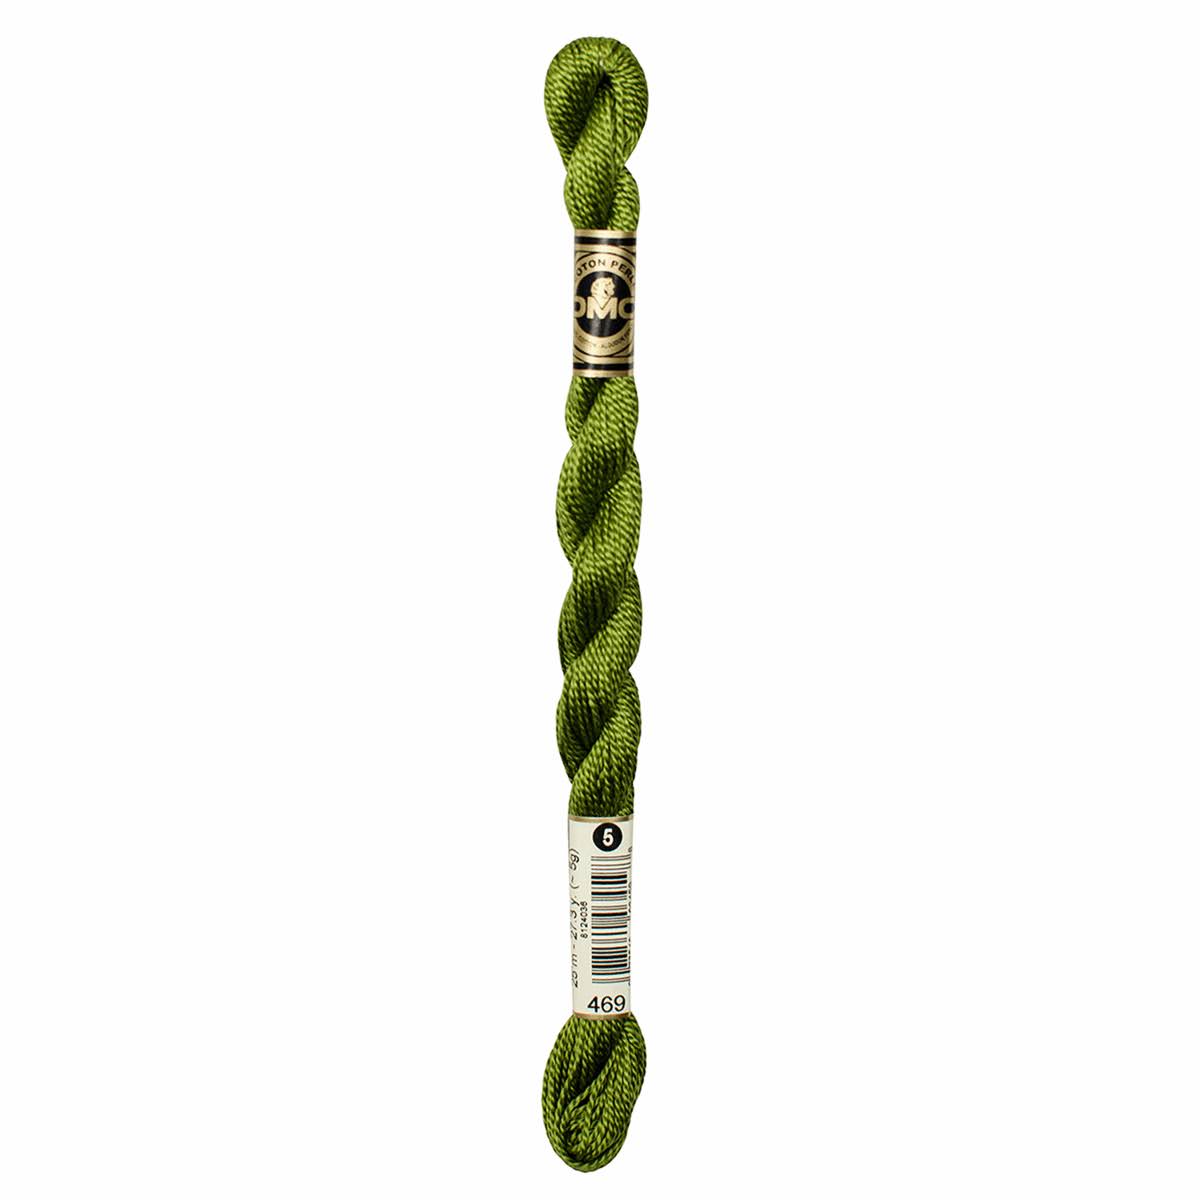 Dmc Pearl Cotton Thread - Avocado Green, 27.3yds